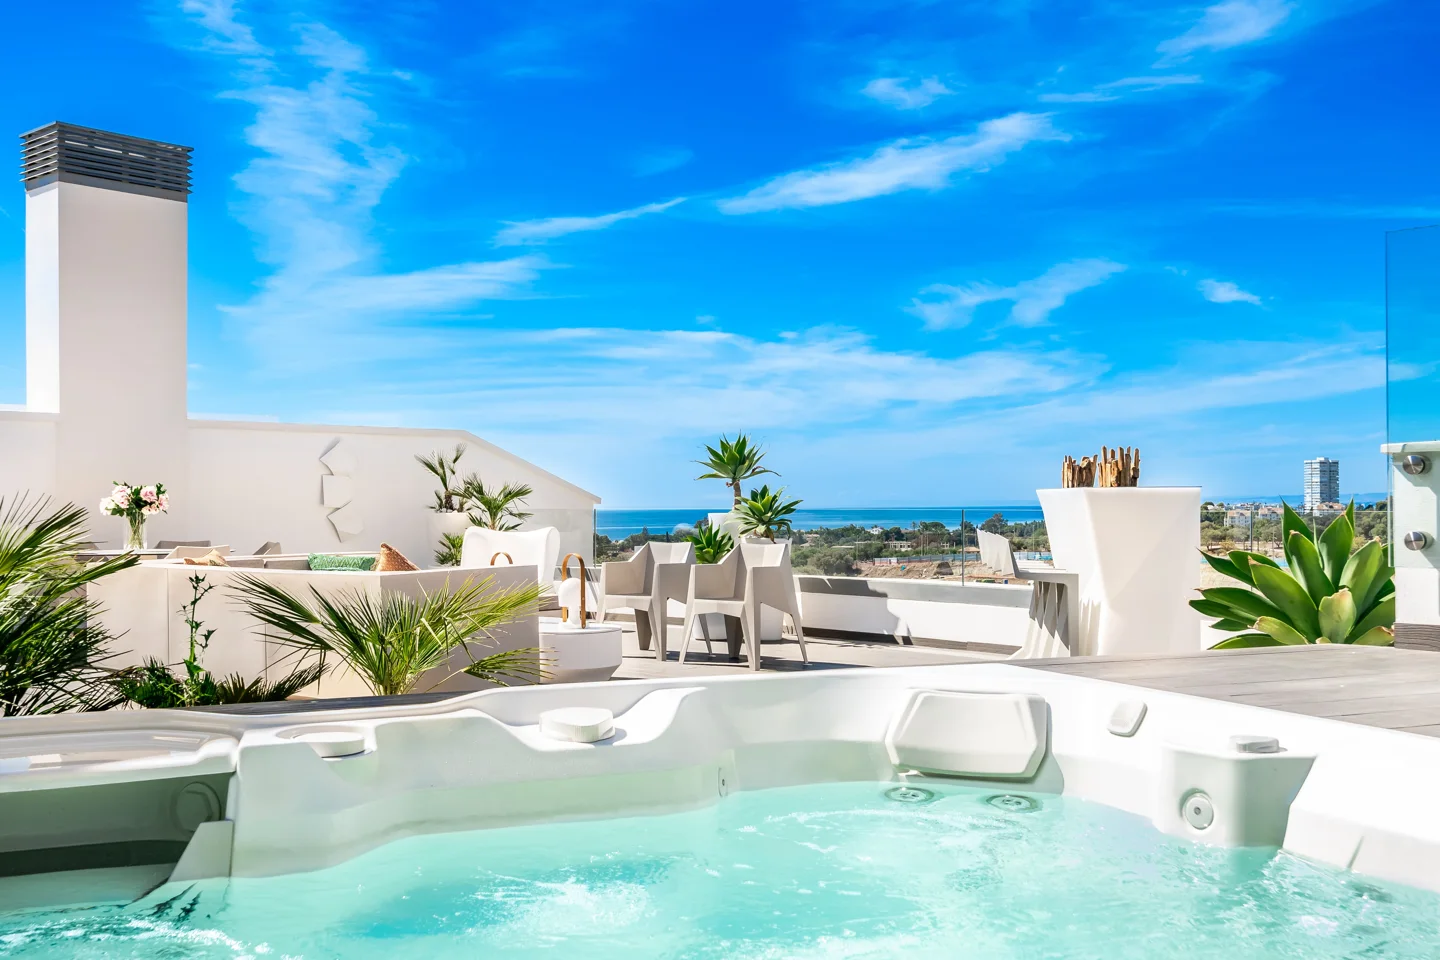 Villa de lujo con piscina privada, jacuzzi en la azotea y vistas espectaculares. Precio desde €5,250